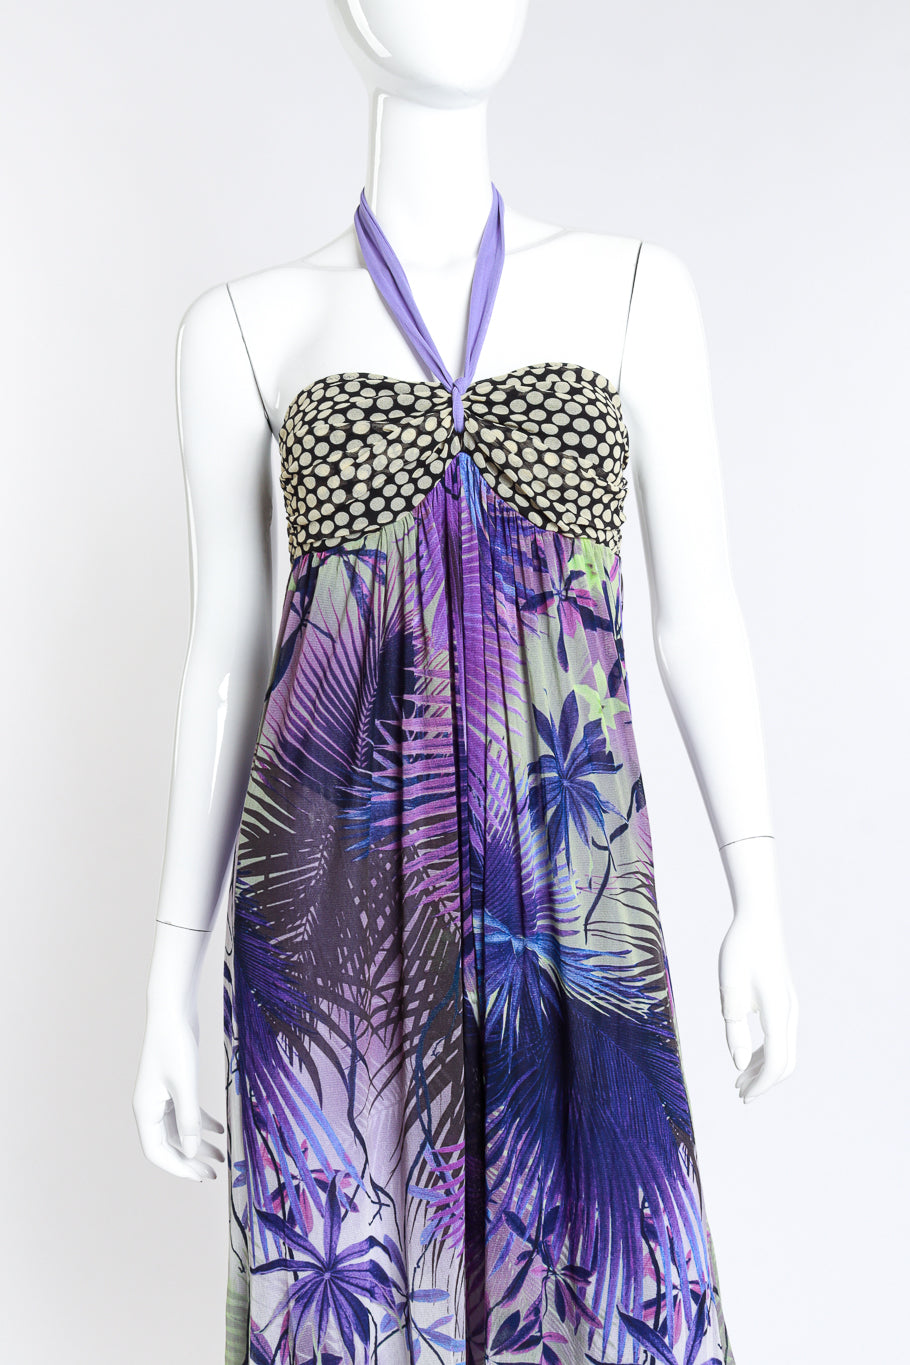 Gaultier 2009 P&P Maxi Dress detail on mannequin @RECESS LA